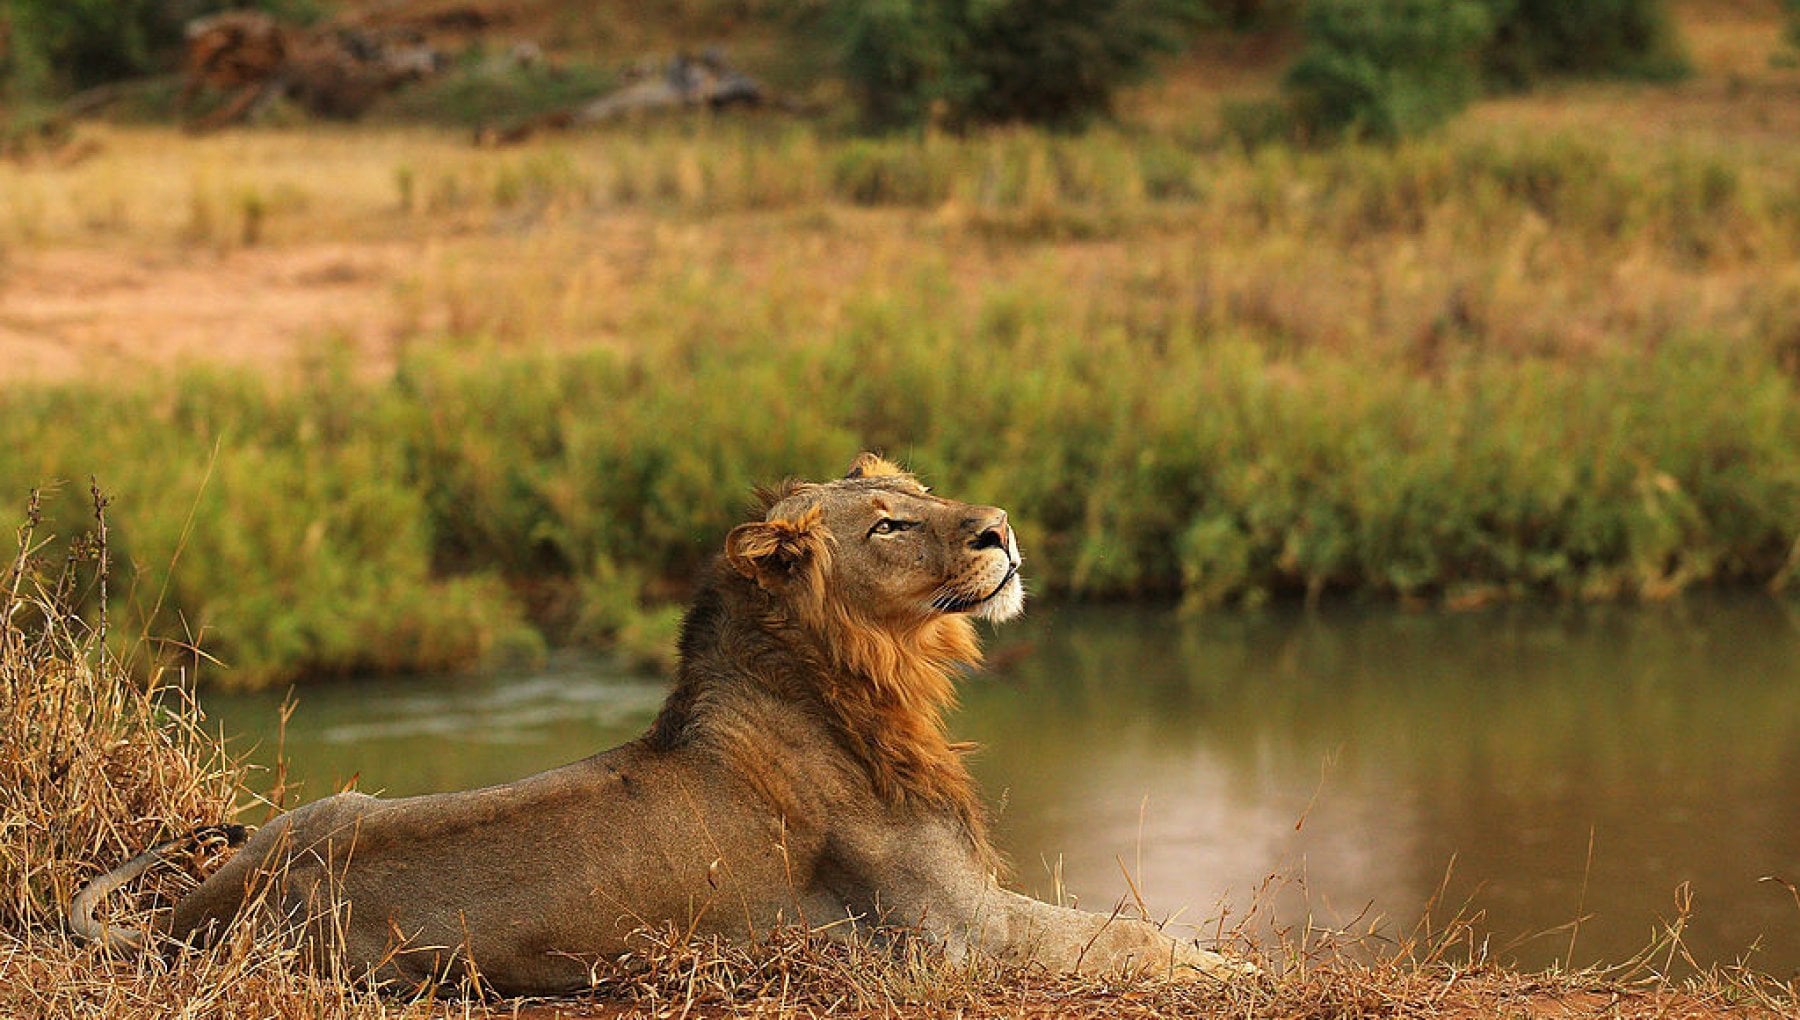 WWF SOS LEONE: il Progetto per salvare i grandi felini africani